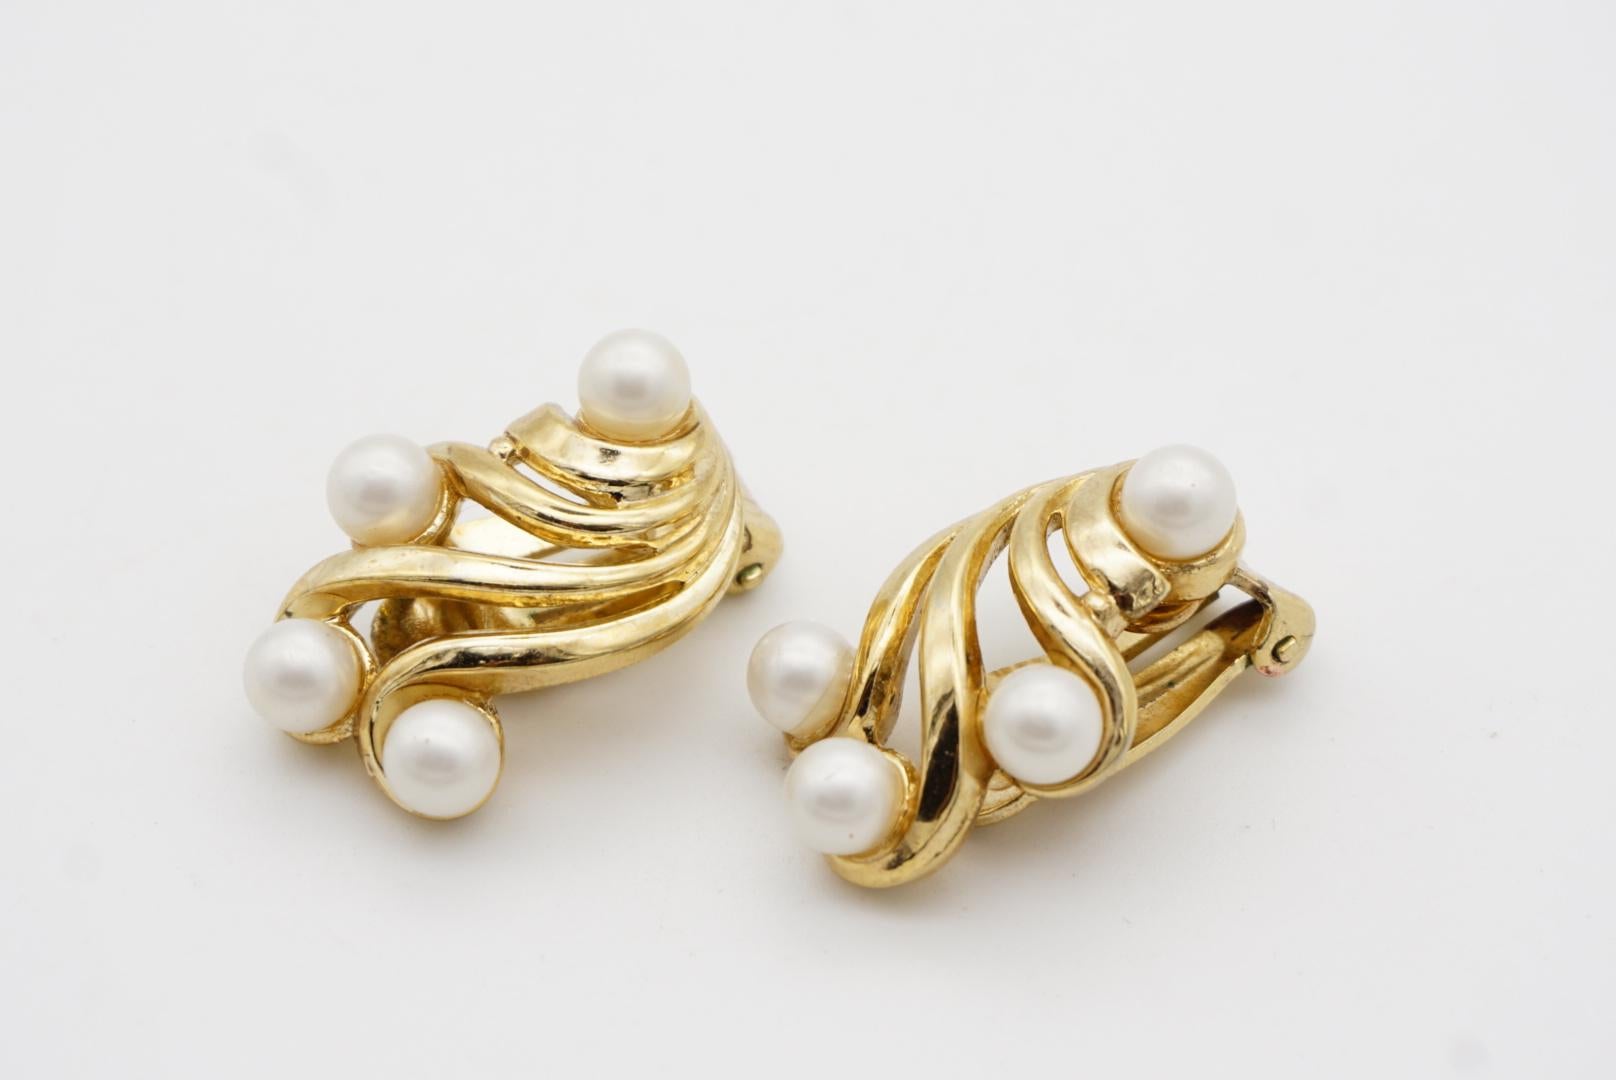 Crown Trifari Vintage 1950s Flower Wing White Pearls Openwork Interlock Earrings For Sale 3